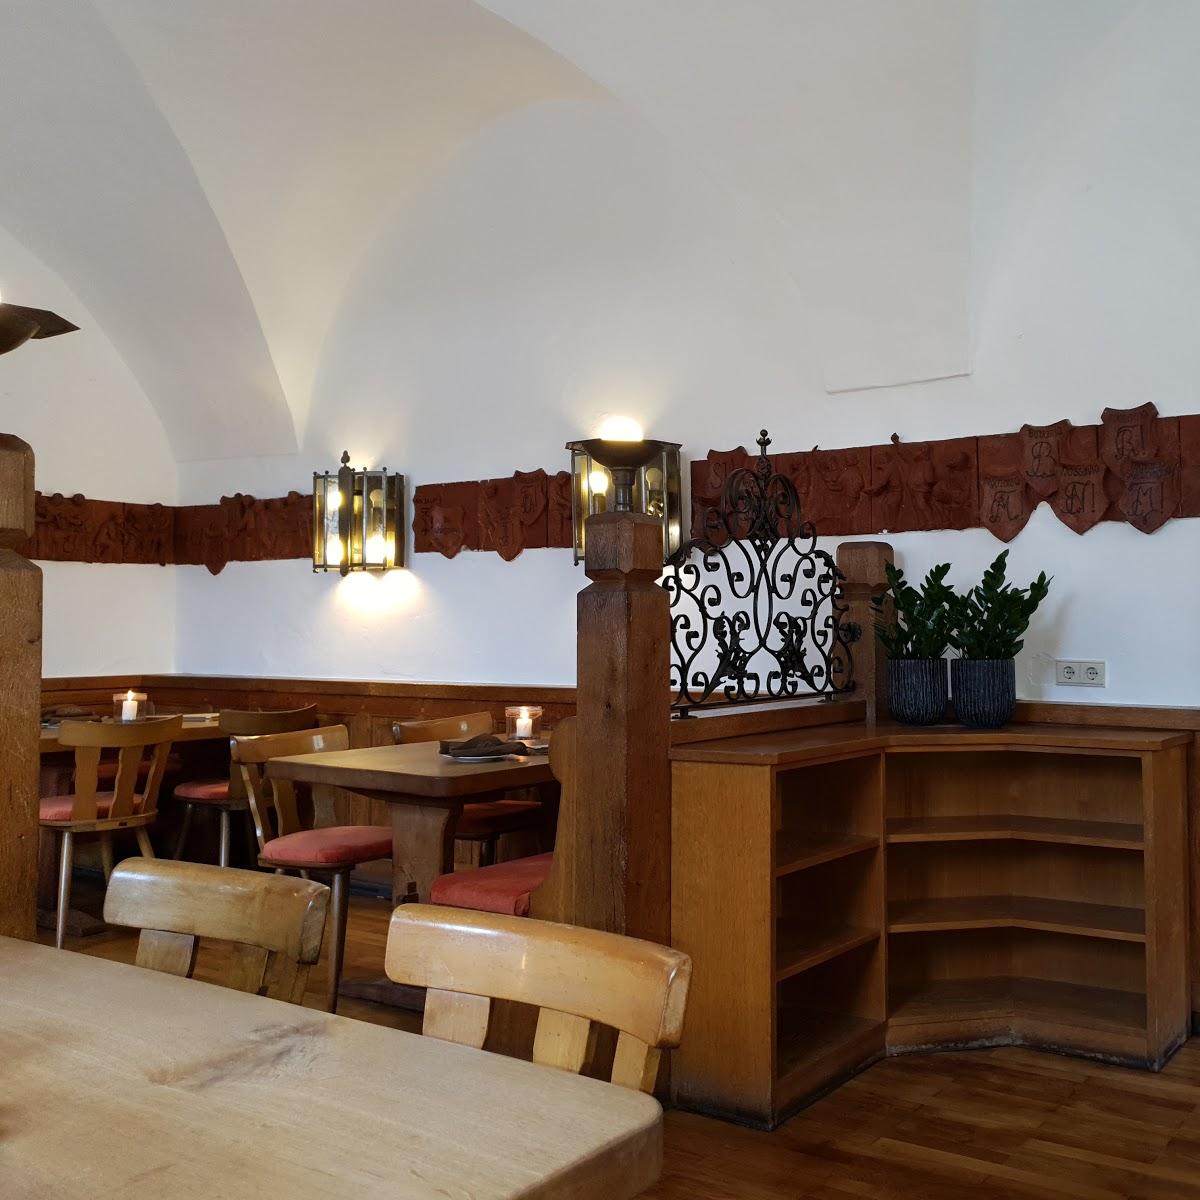 Restaurant "Reisers Zehnthof" in Nordheim am Main